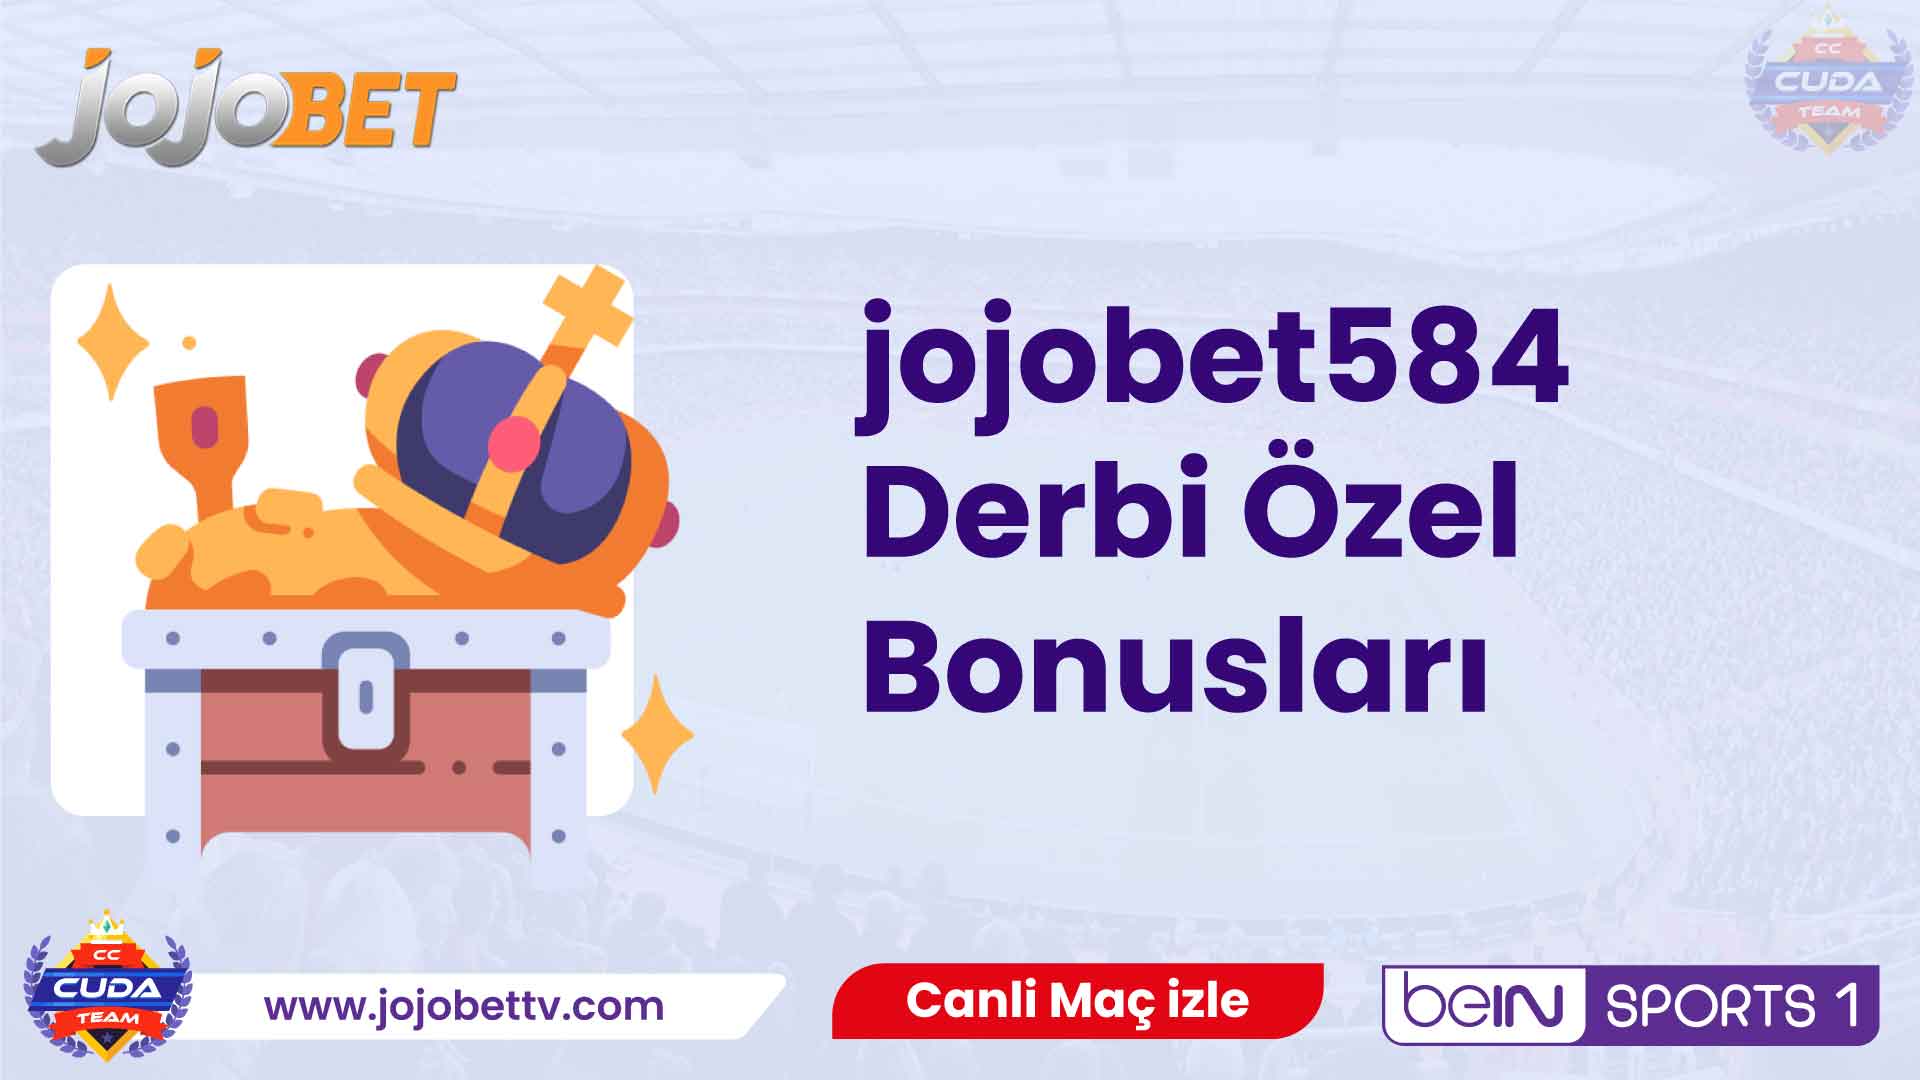 jojobet584 Derbi Özel Bonusları